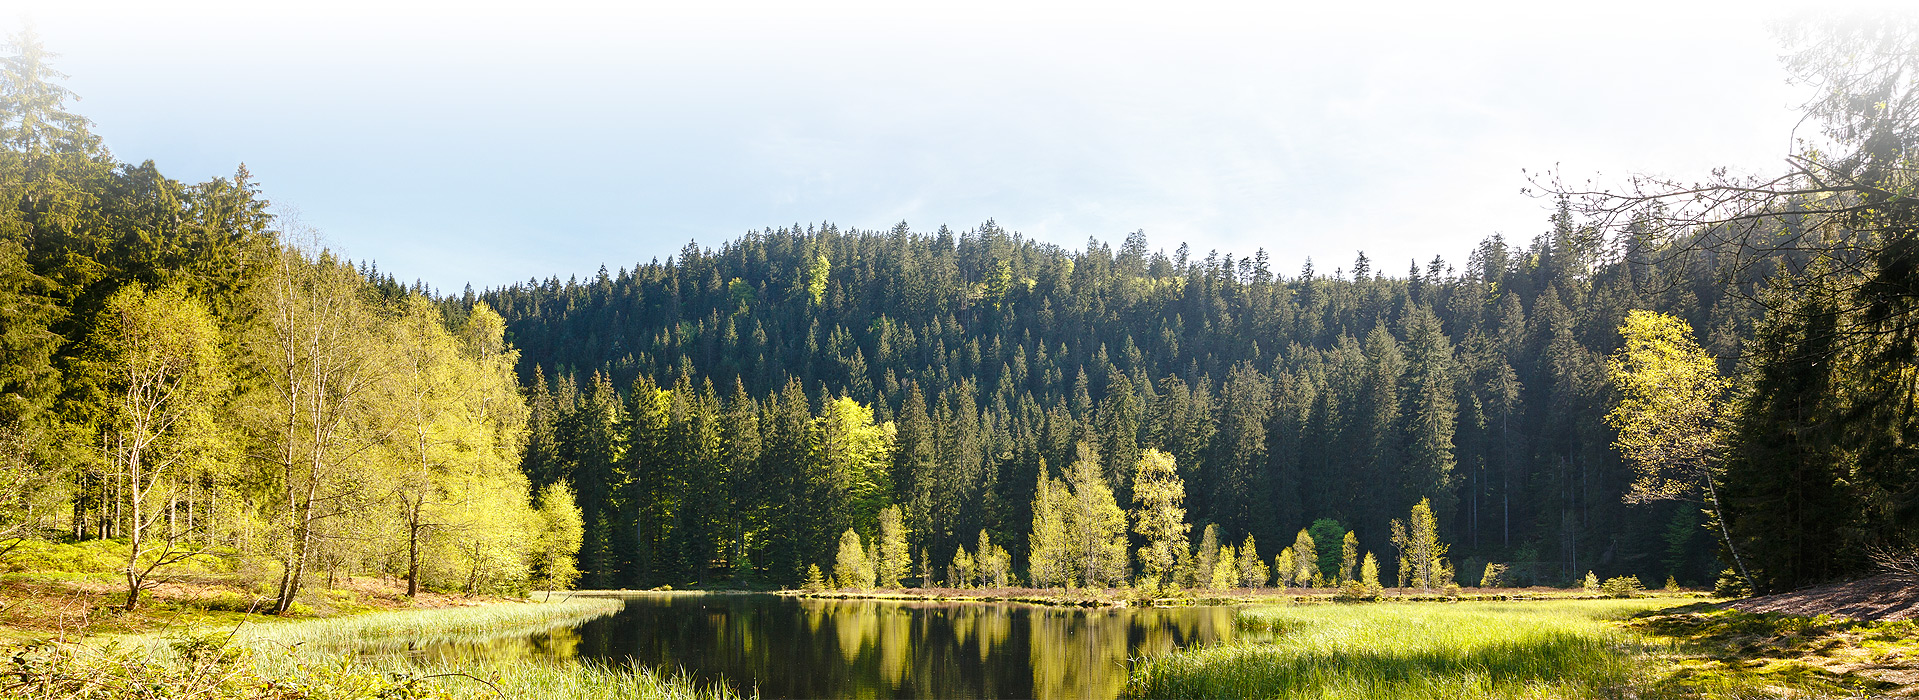 Abgebildet ist der Buhlbachsee. An den Bildrändern ist der Uferbereich zu sehen. Den Hintergrund bildet ein mit Nadelbäumen bewachsener Berg. Am Fuß des Berges liegt der Buhlbachsee. In der Mitte des Sees stehen einige Birken, welche auf schwimmenden Inseln wachsen.